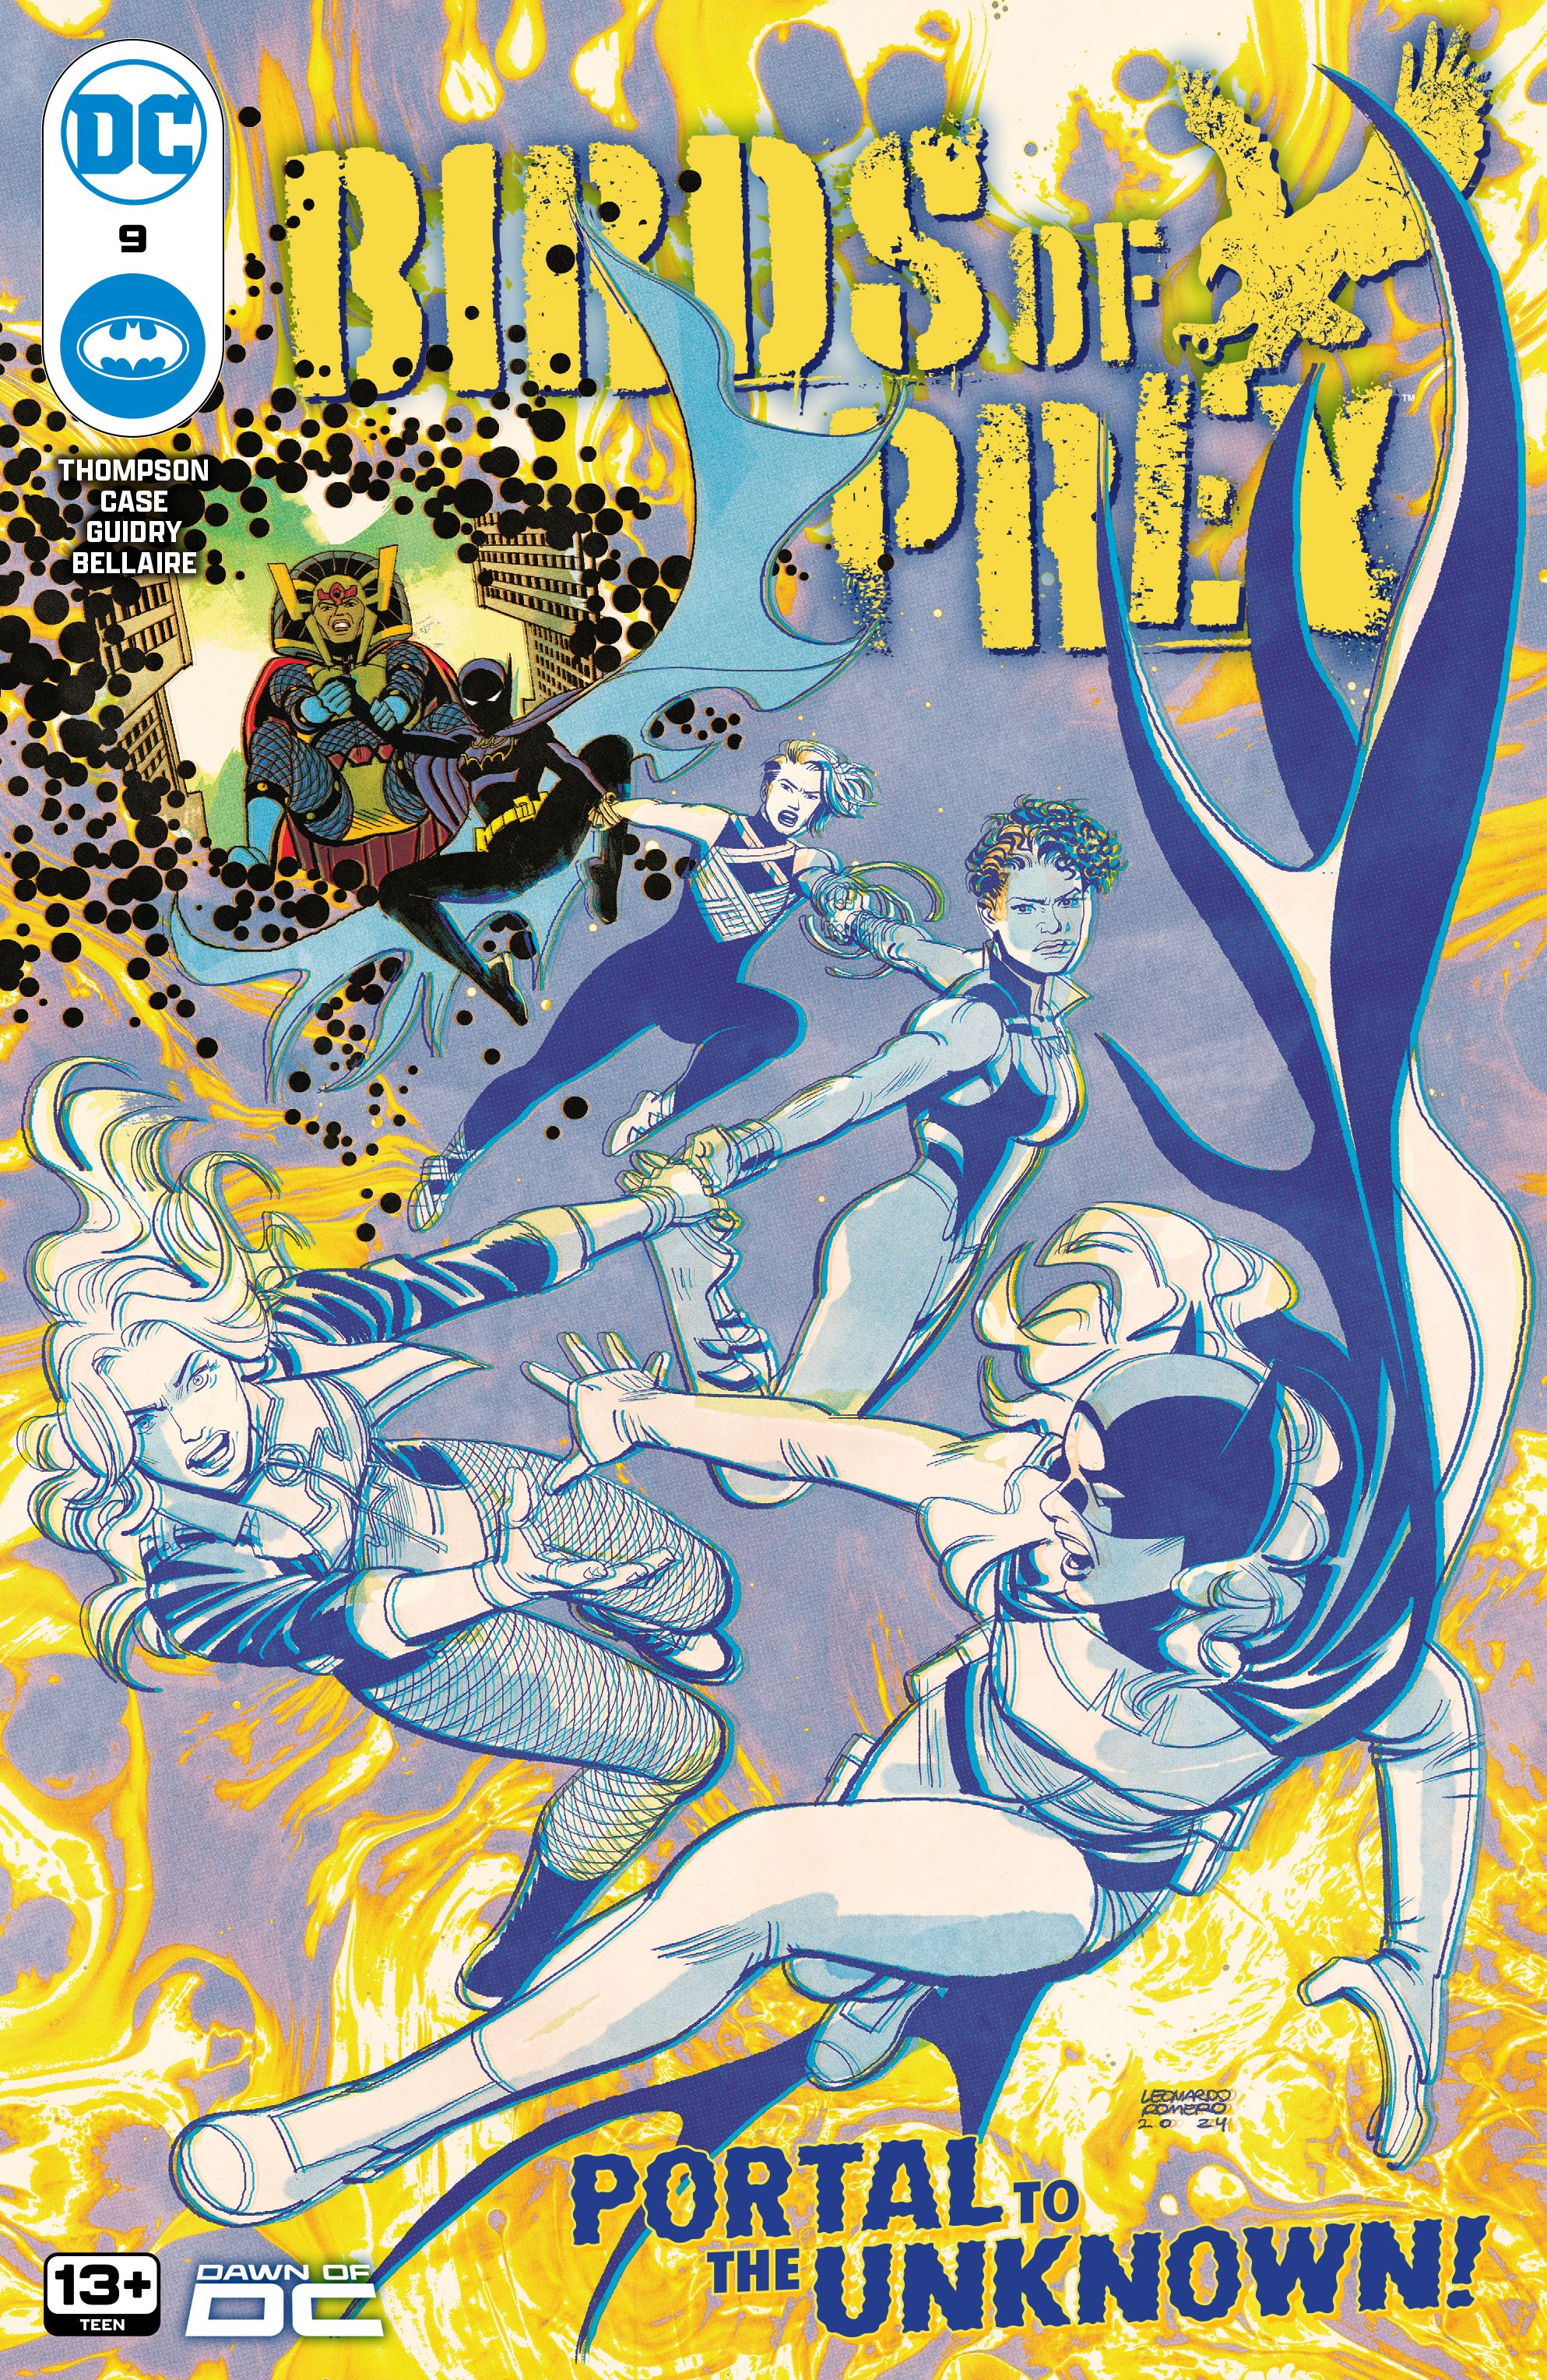 Birds of Prey 9 Main Cover: Black Canary, Vixen, Sin, Cassandra Cain Batgirl, & Big Barda go through a portal.